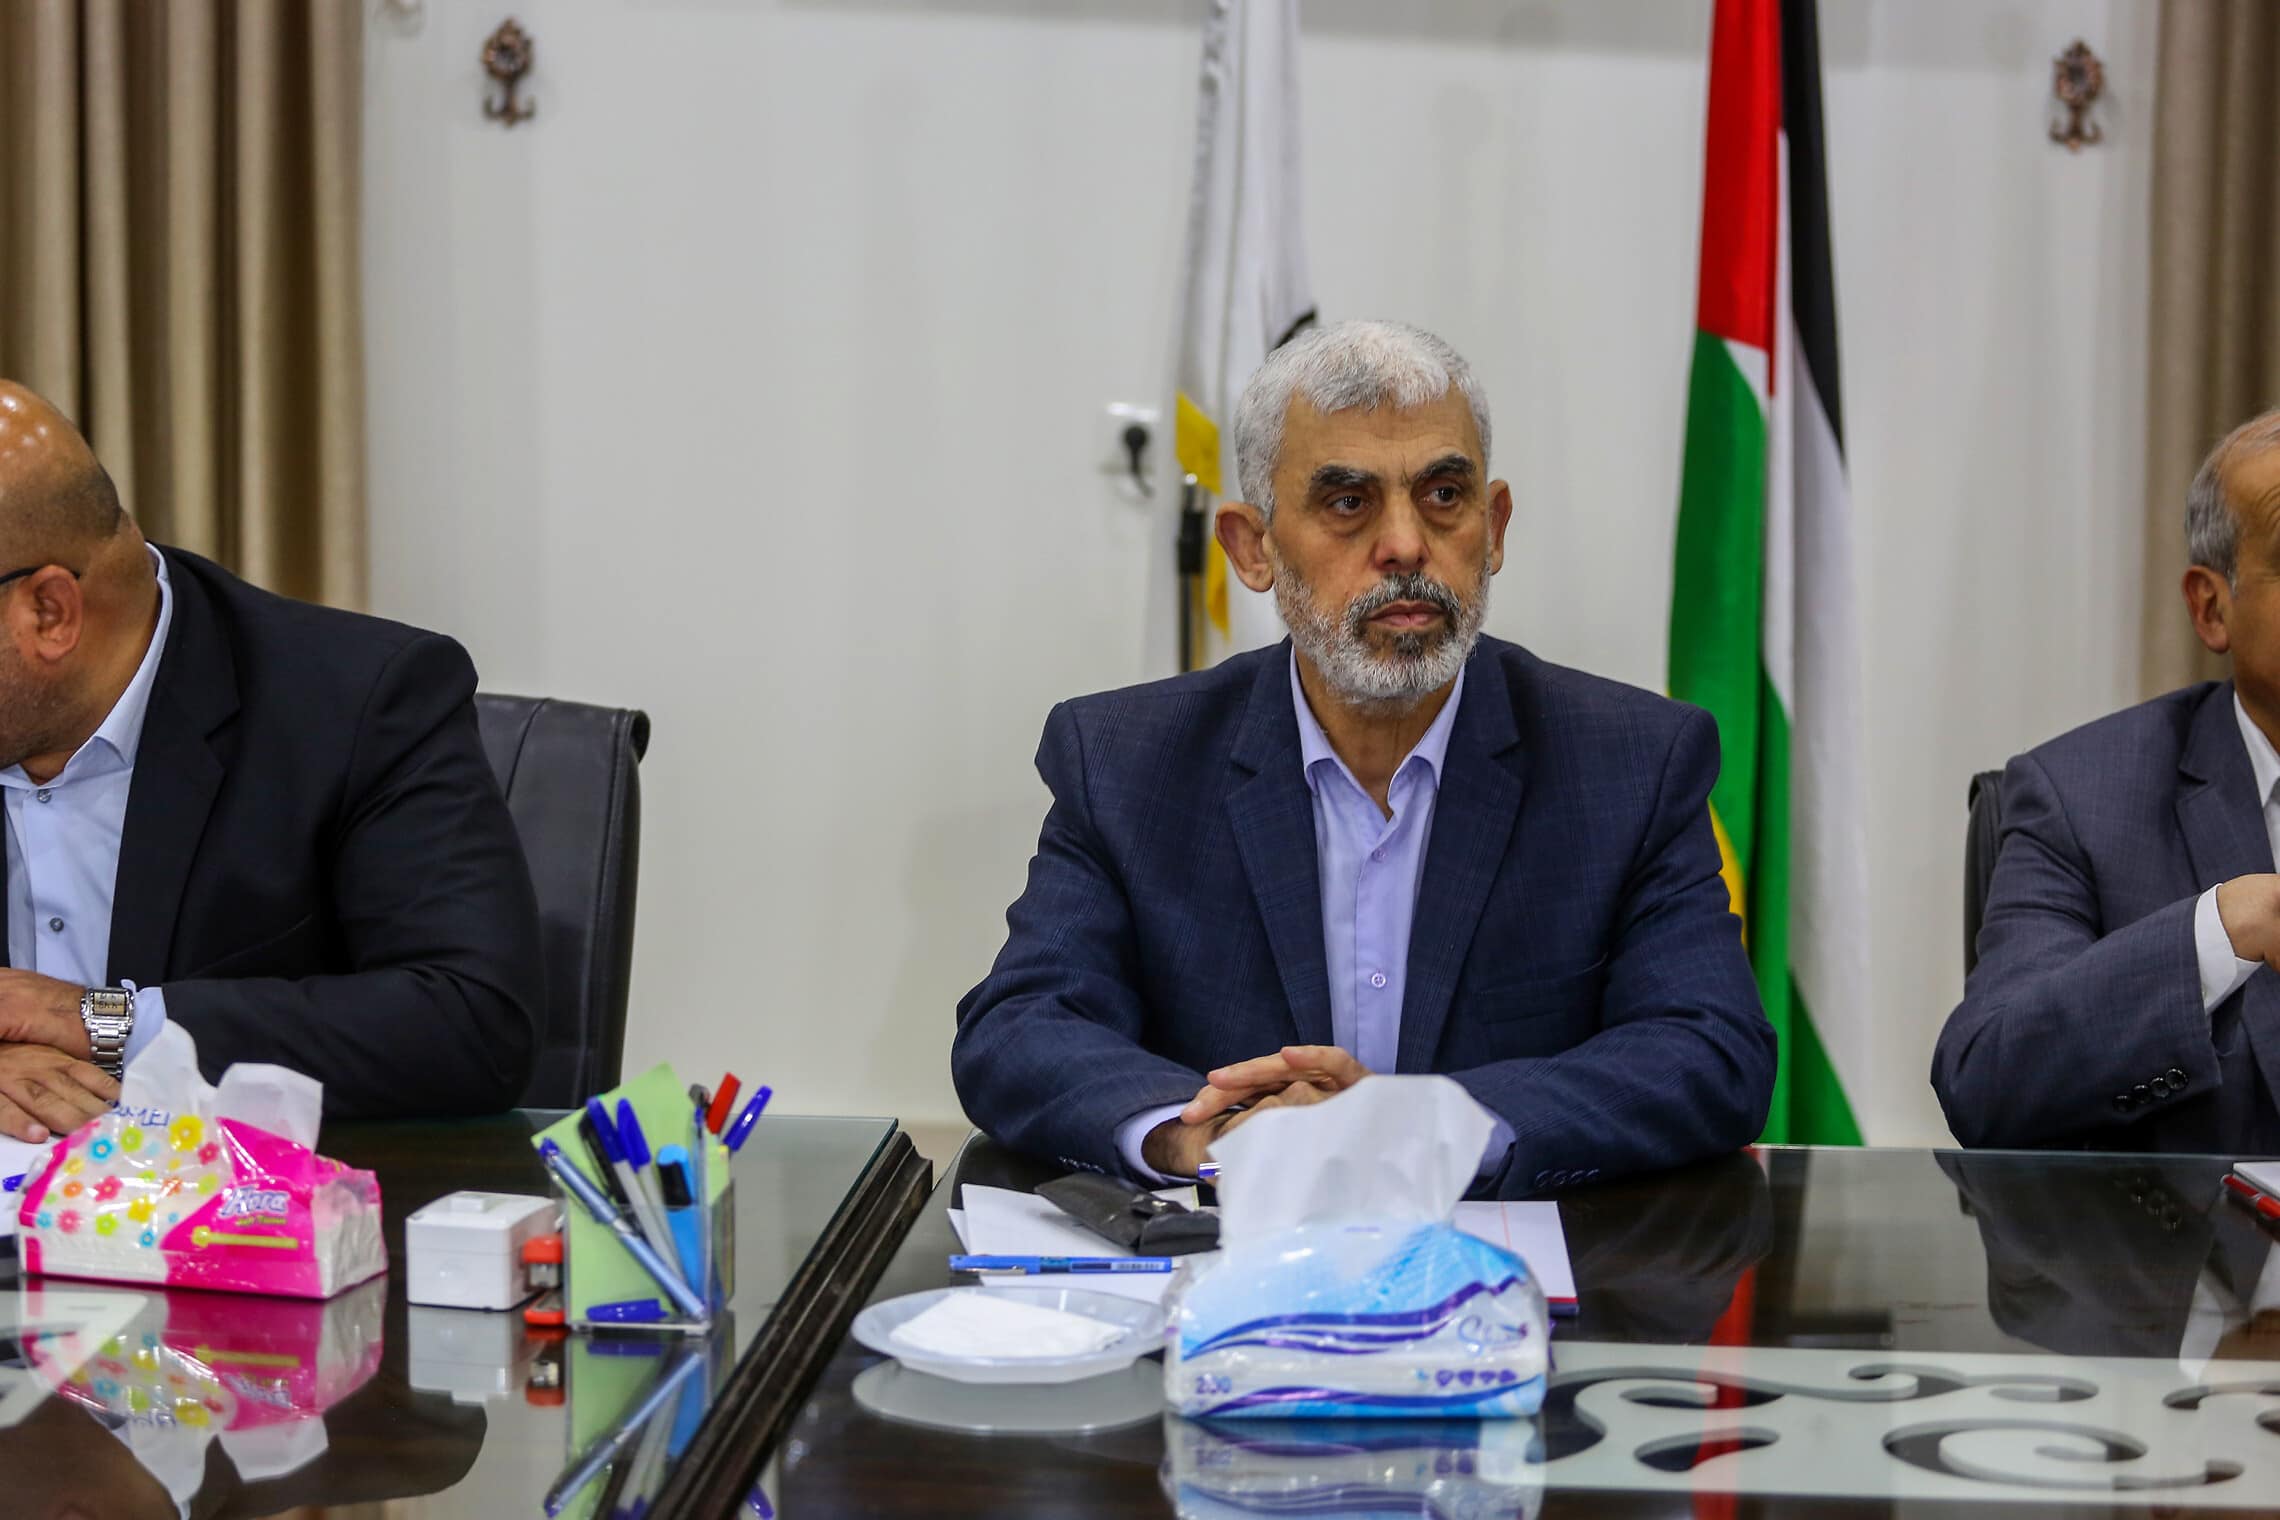 מנהיג חמאס יחיא סנוואר בפגישה עם מנהיגי הפלגים הפלסטינים ברצועת עזה, במשרדו של נשיא חמאס בעיר עזה, 13 באפריל 2022 (צילום: Attia Muhammed/Flash90)